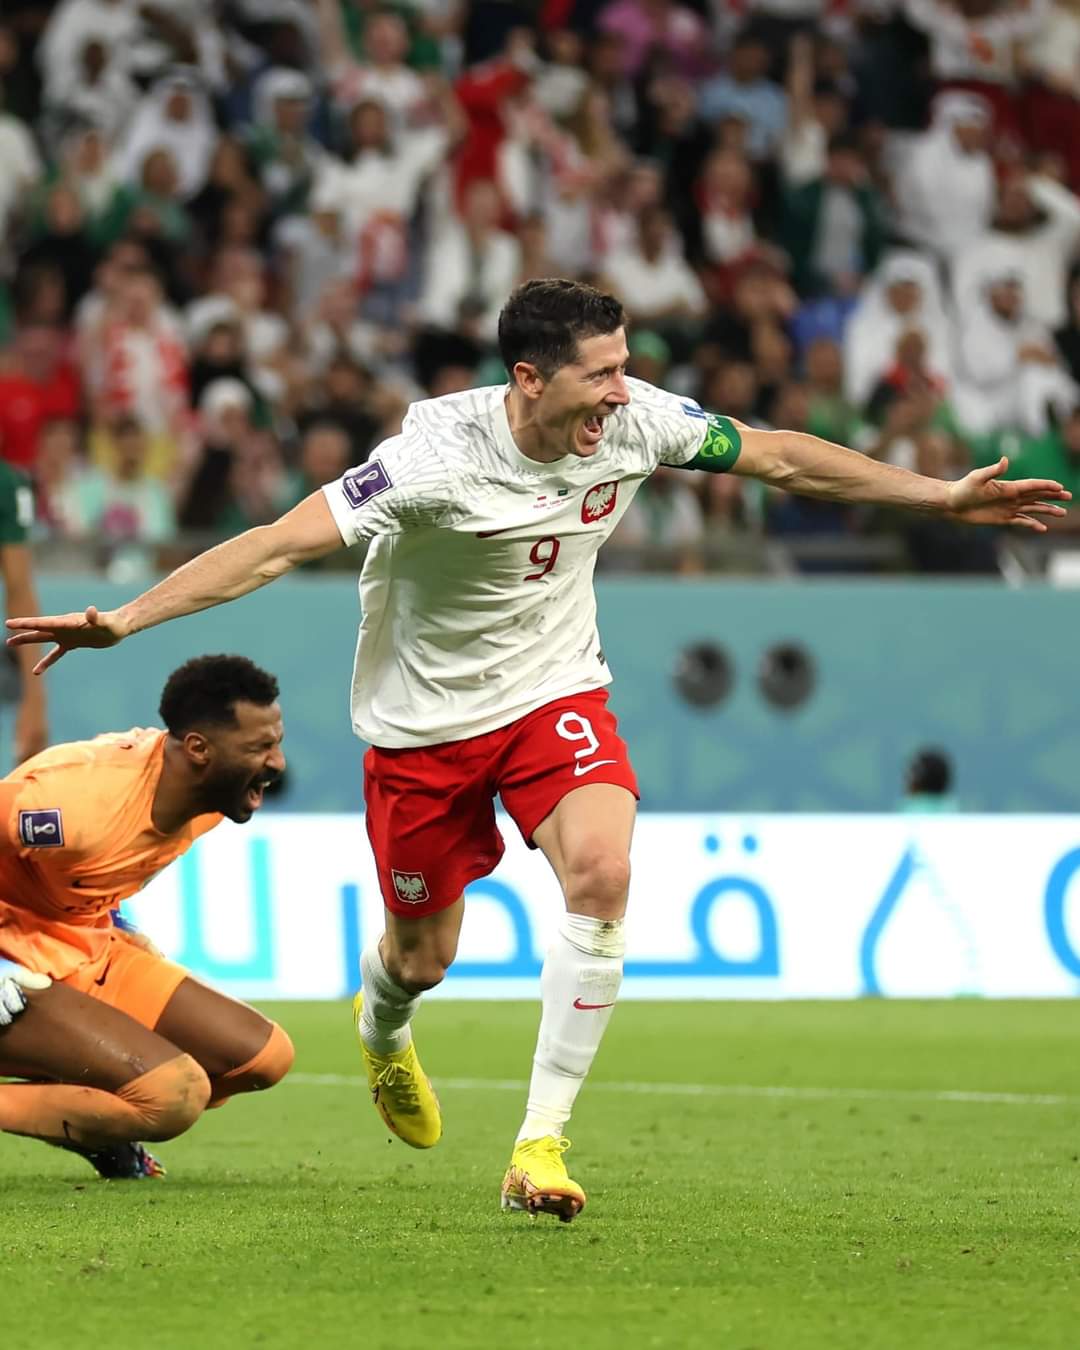 لماذا تنهزم الفرق العربية و الإفريقية في كأس العالم لكرة القدم؟؟؟